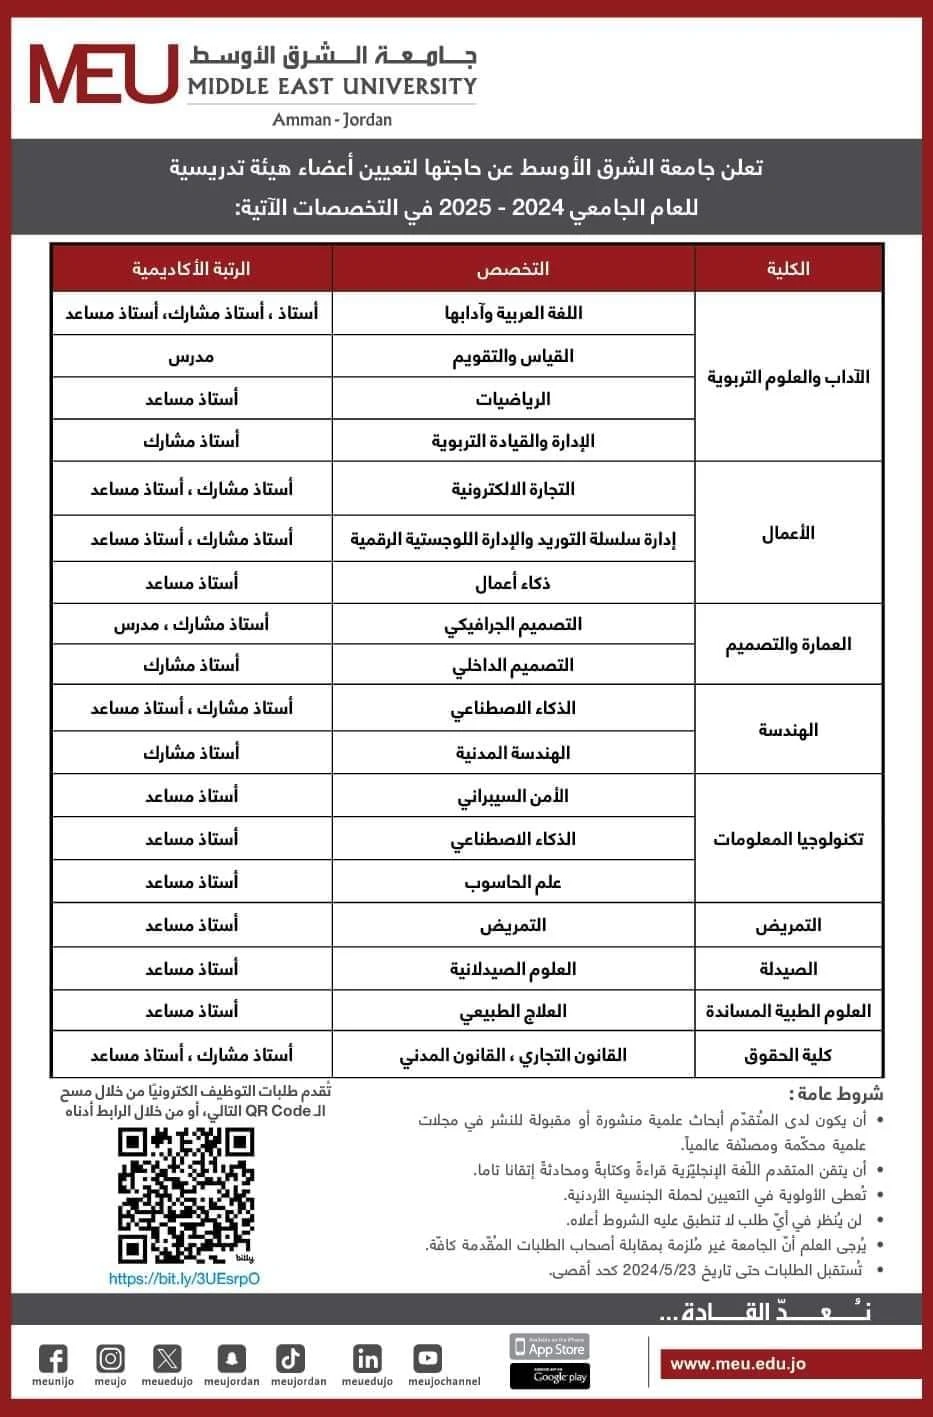 وظائف أعضاء هيئة تدريس في جامعة الشرق الأوسط - تخصصات مختلفة